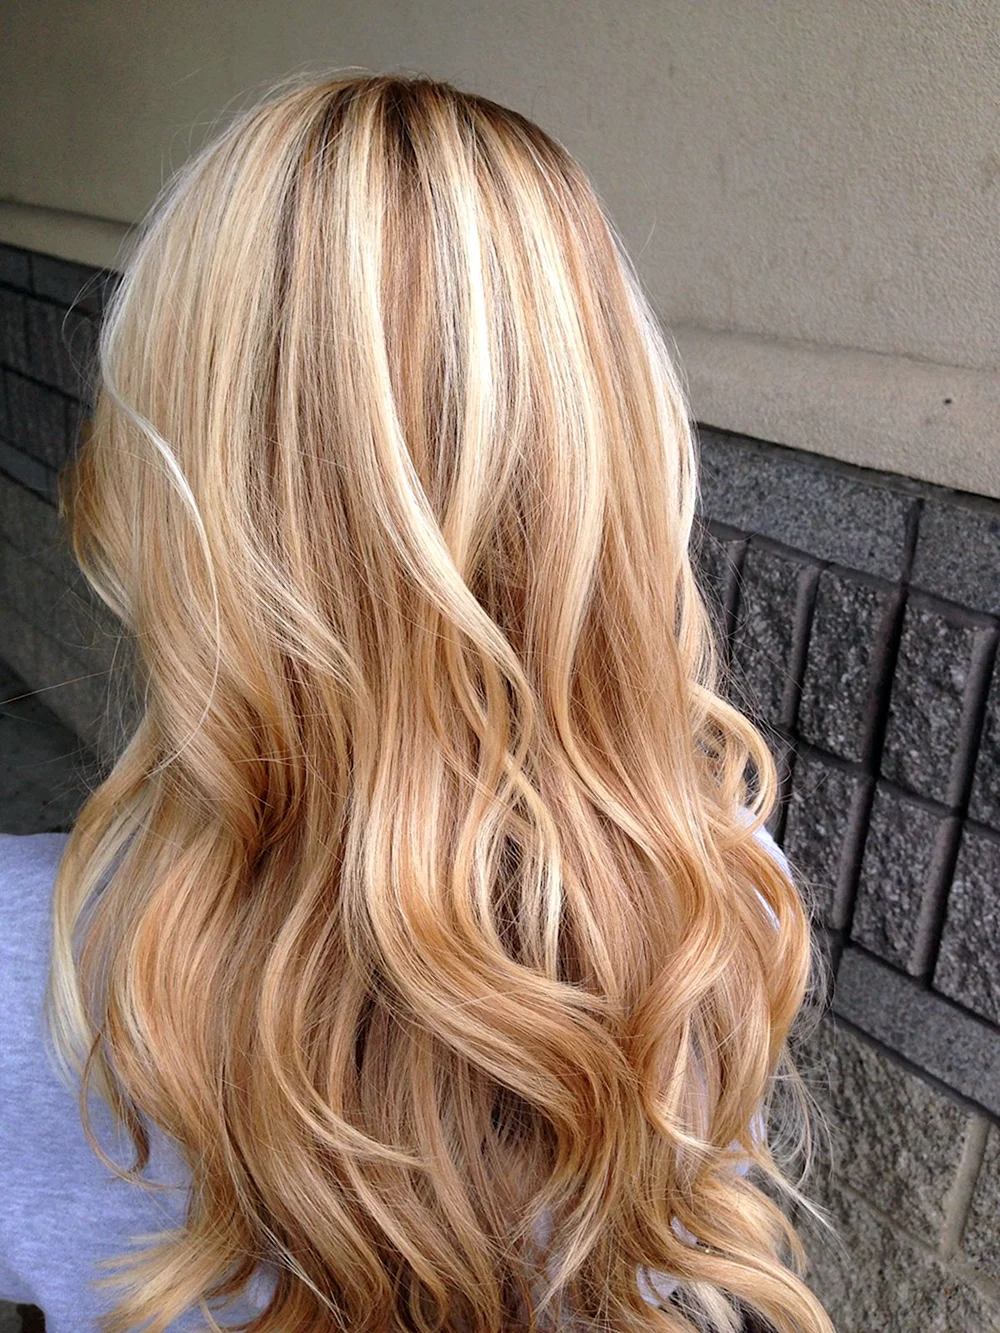 Honey blonde hair